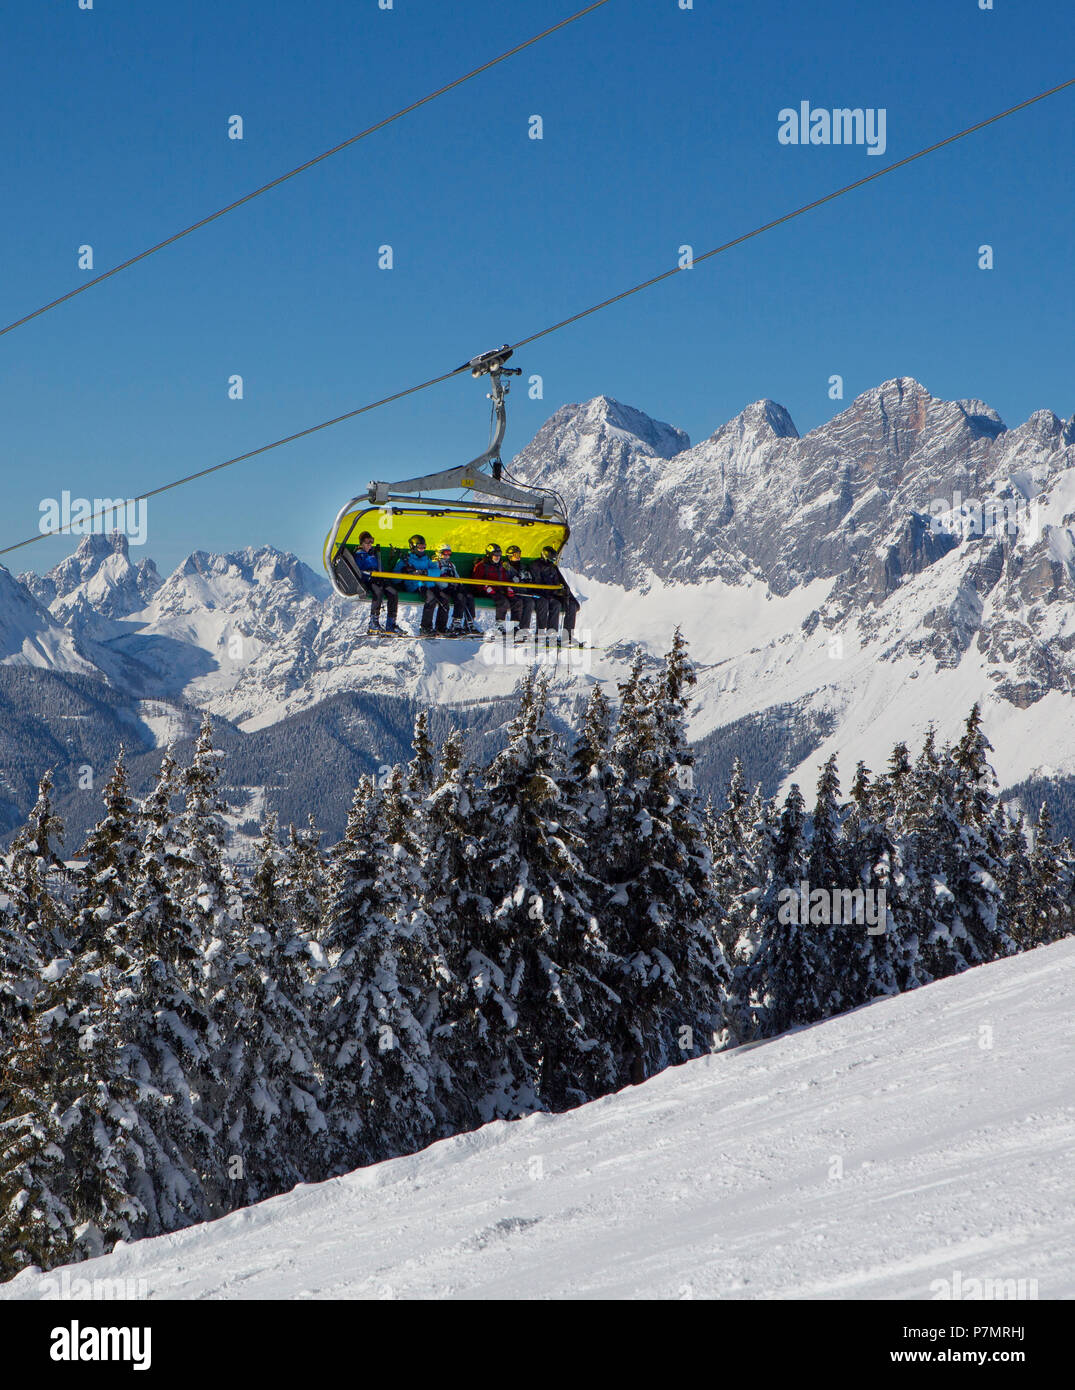 Austria, Styria, Liezen district, Schladming, Planai, Planai ski area, view to the Dachstein massif, chairlift, Stock Photo